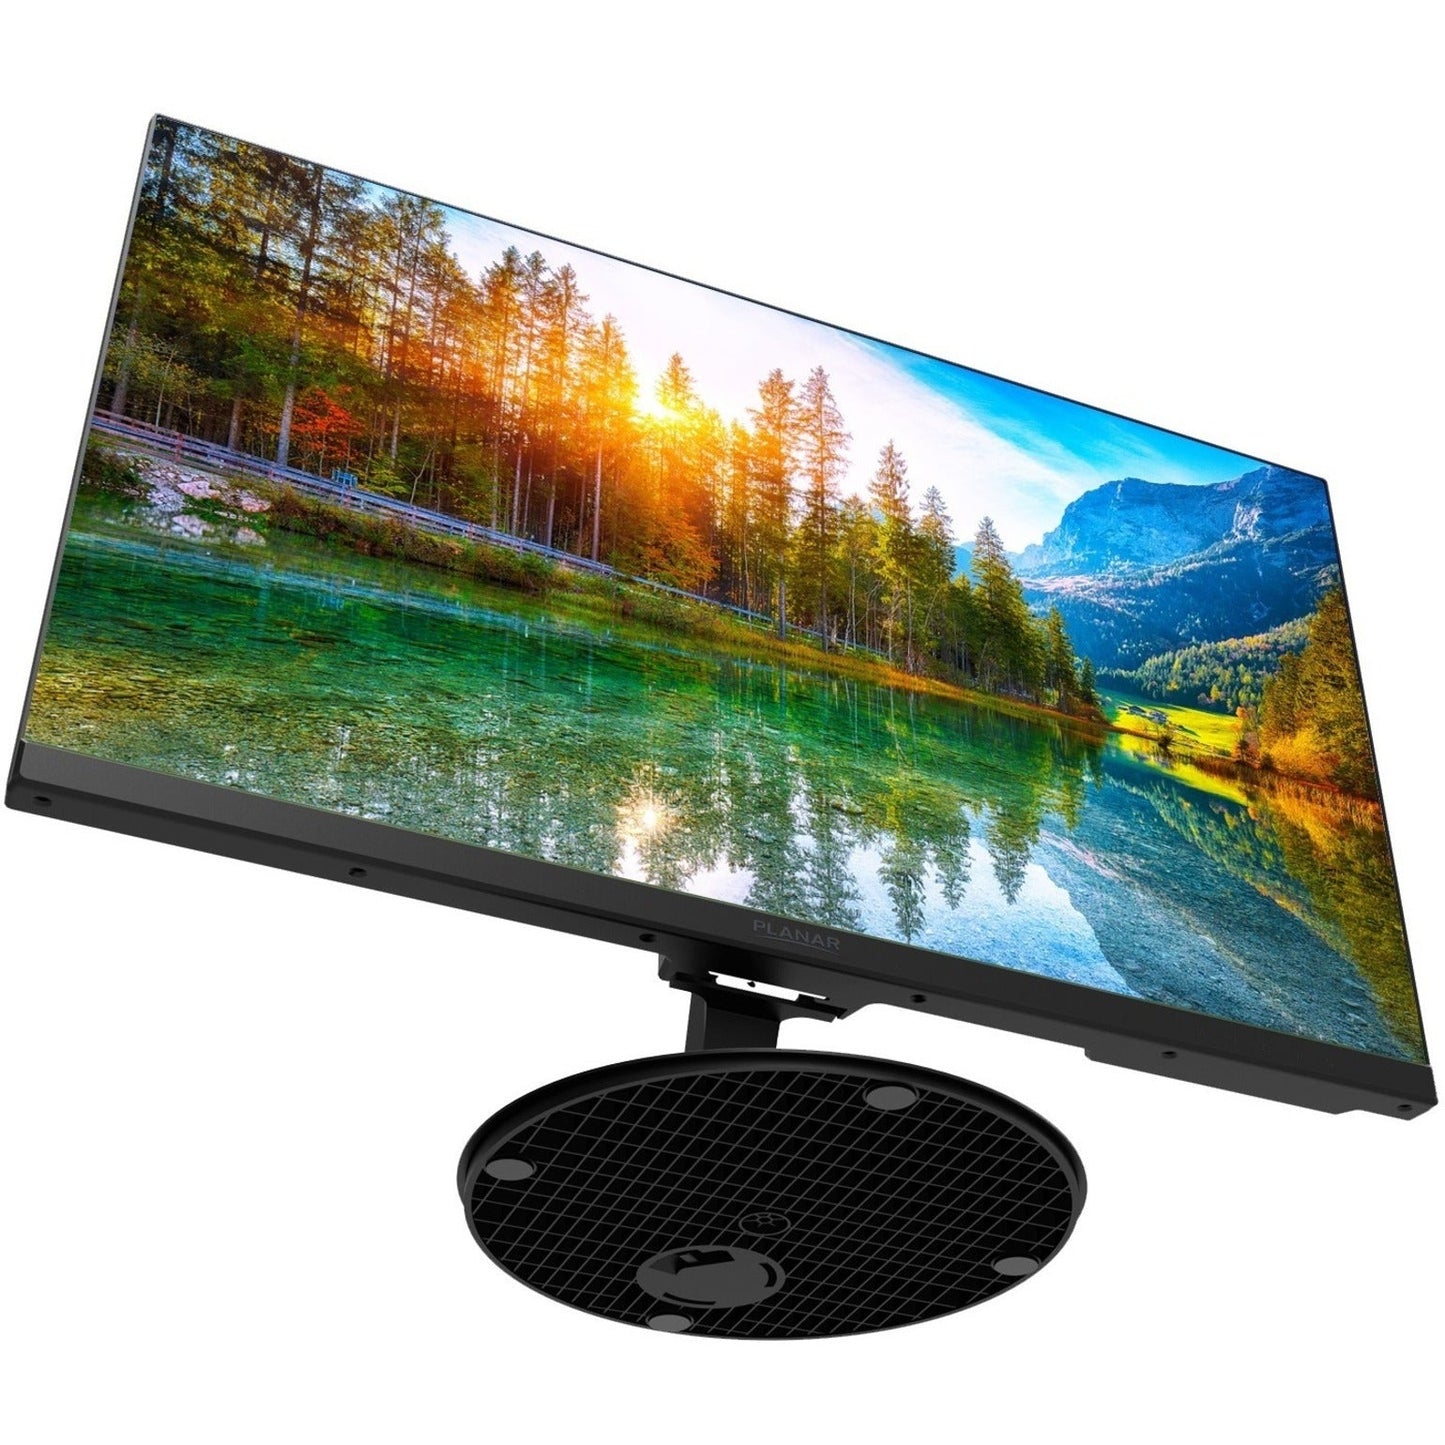 Planar PLN2400 23.8" Full HD LCD Monitor - 16:9 - Black